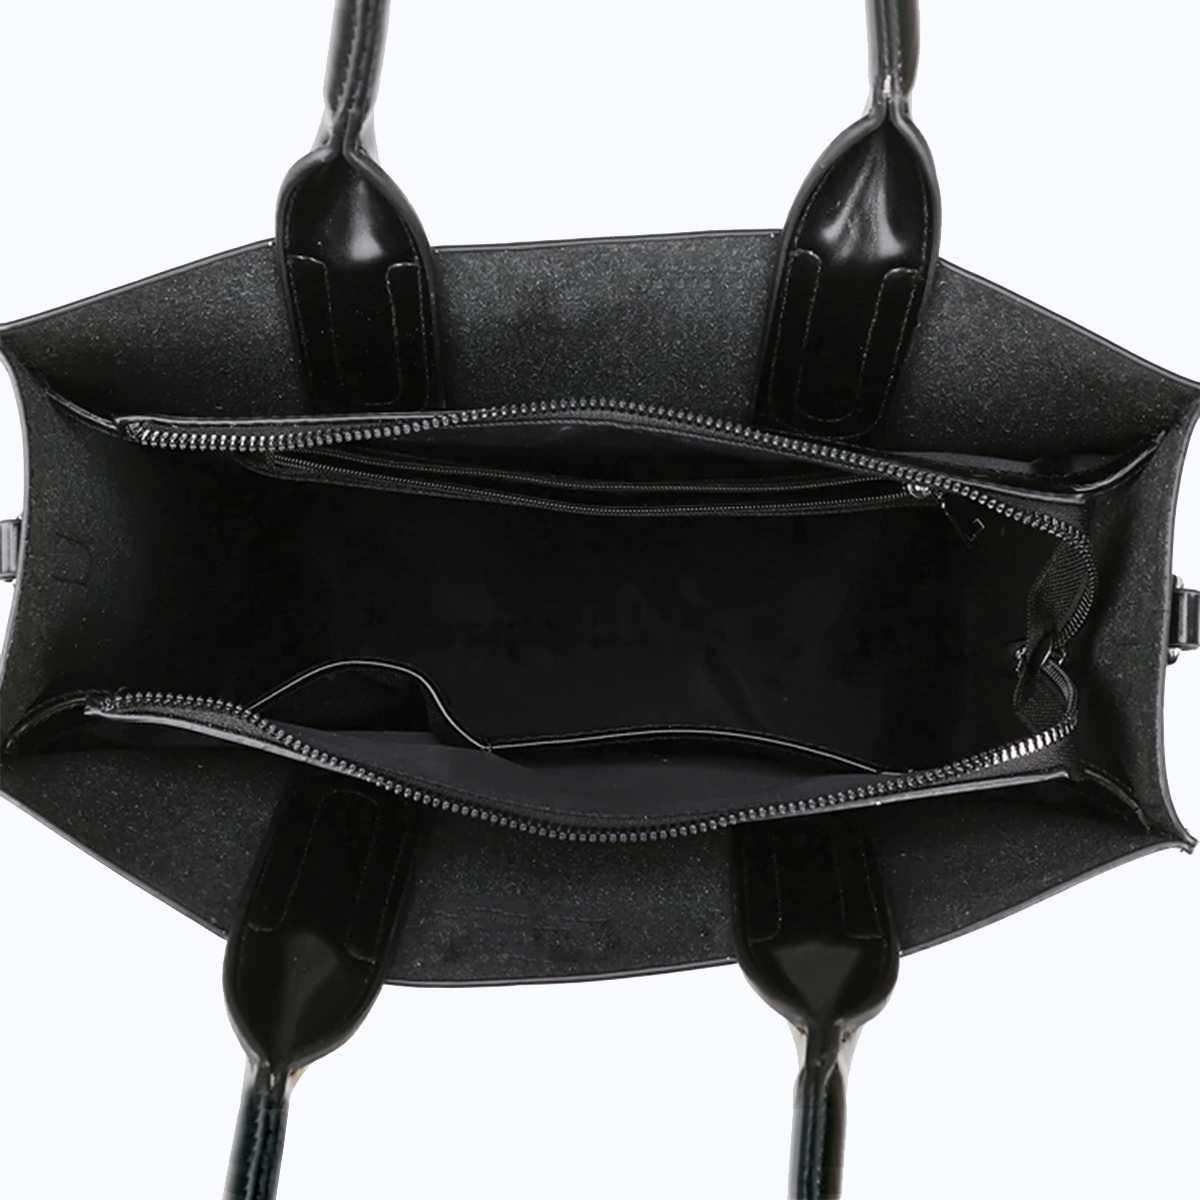 Bouvier des Flandres Luxury Handbag V1